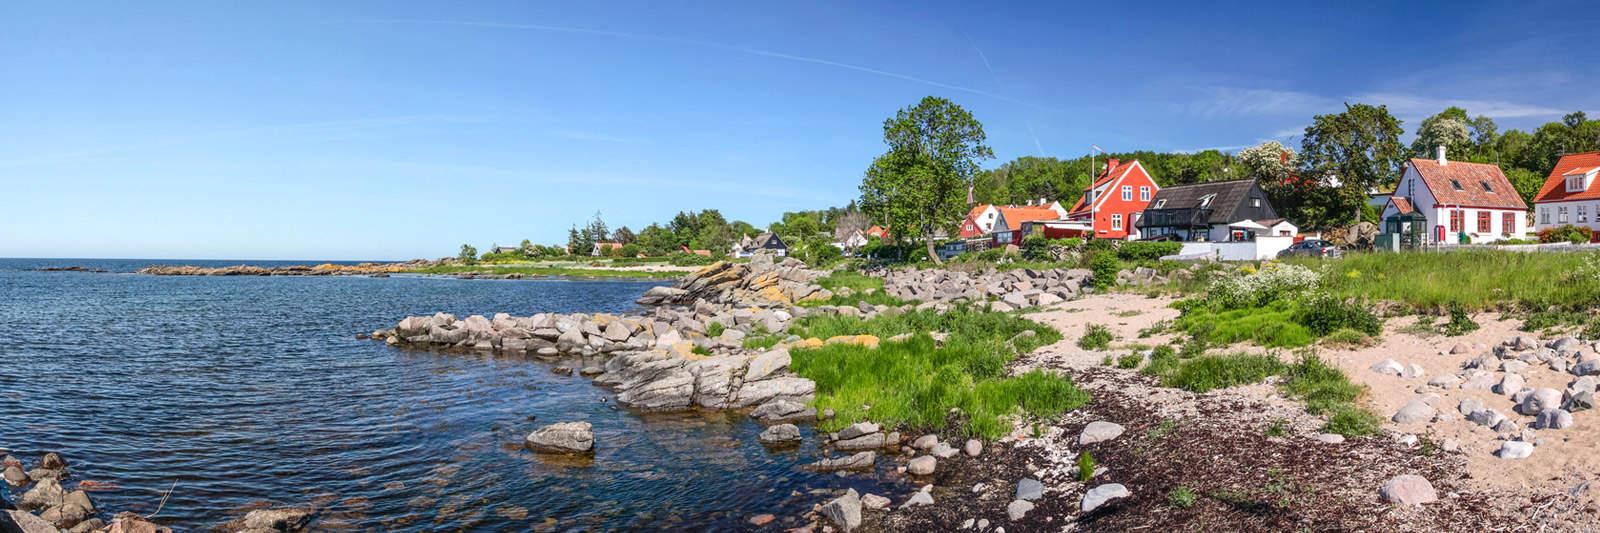 34 Ferienwohnungen und Ferienhäuser in Nørre Kettingskov - tourist-online.de